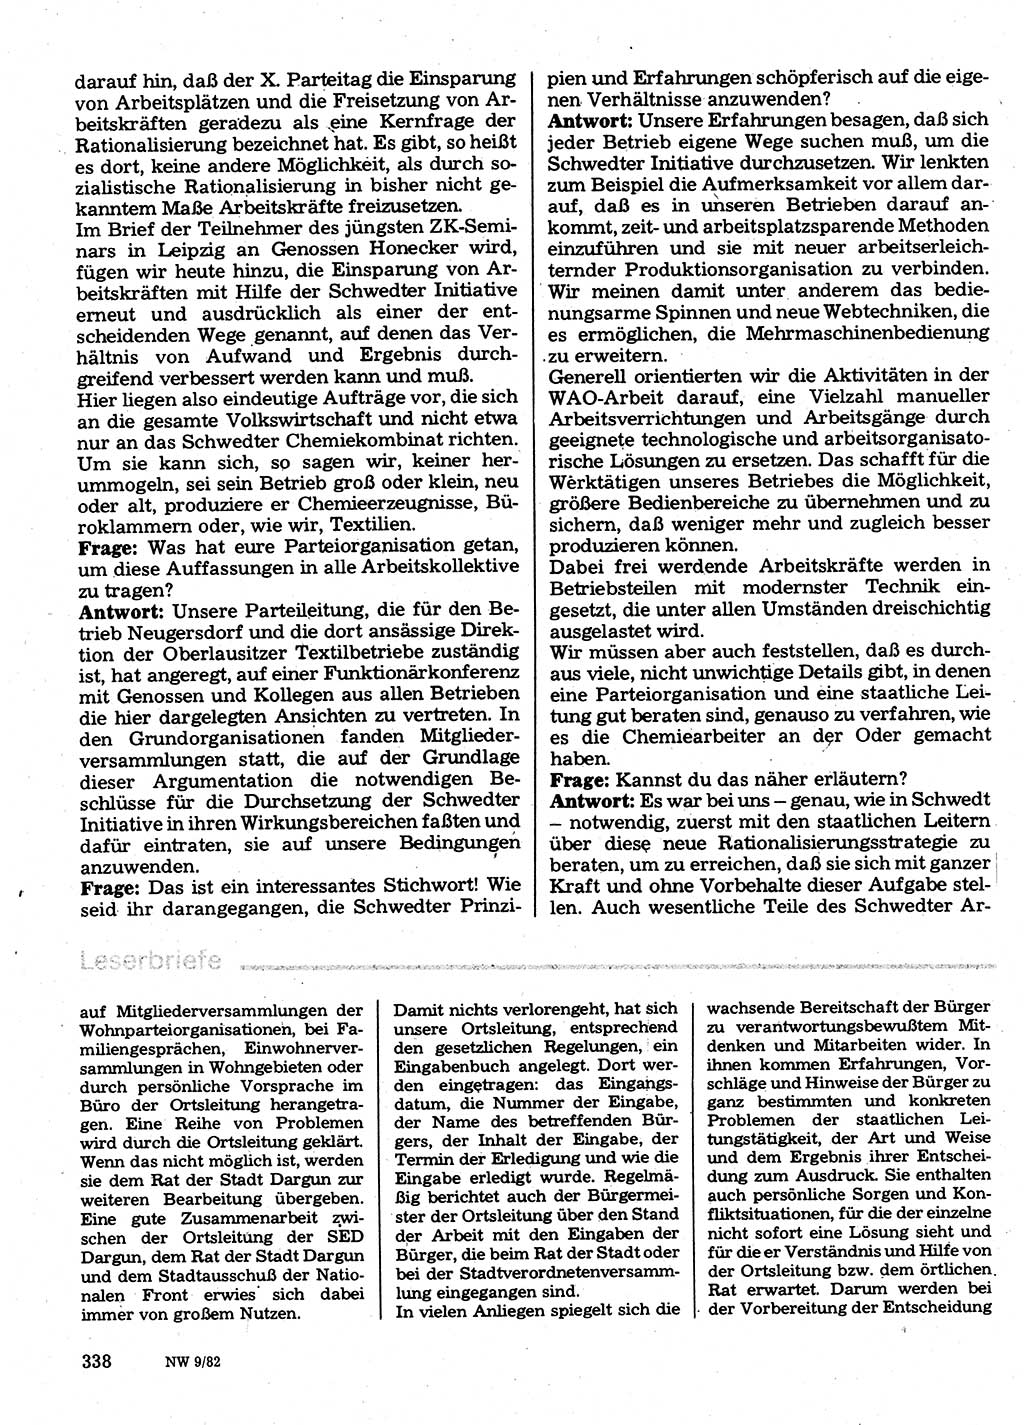 Neuer Weg (NW), Organ des Zentralkomitees (ZK) der SED (Sozialistische Einheitspartei Deutschlands) für Fragen des Parteilebens, 37. Jahrgang [Deutsche Demokratische Republik (DDR)] 1982, Seite 338 (NW ZK SED DDR 1982, S. 338)